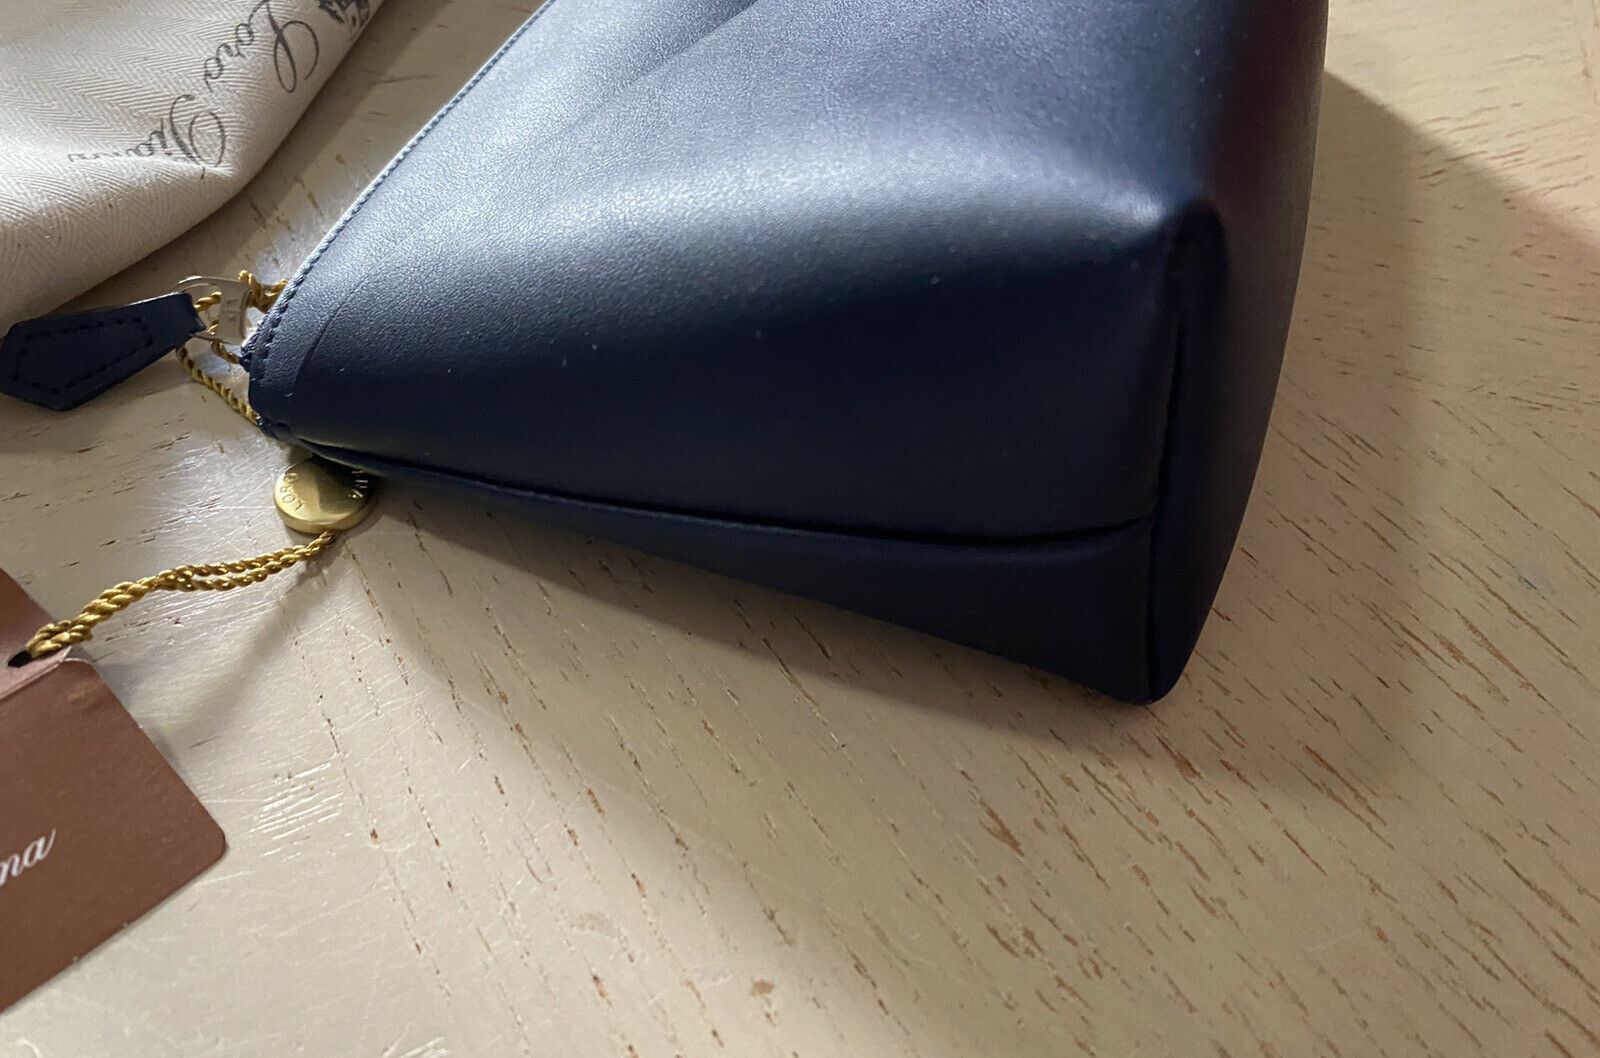 Neue Loro Piana Leder-Reißverschlusstasche im Wert von 960 $, Marineblau, Italien